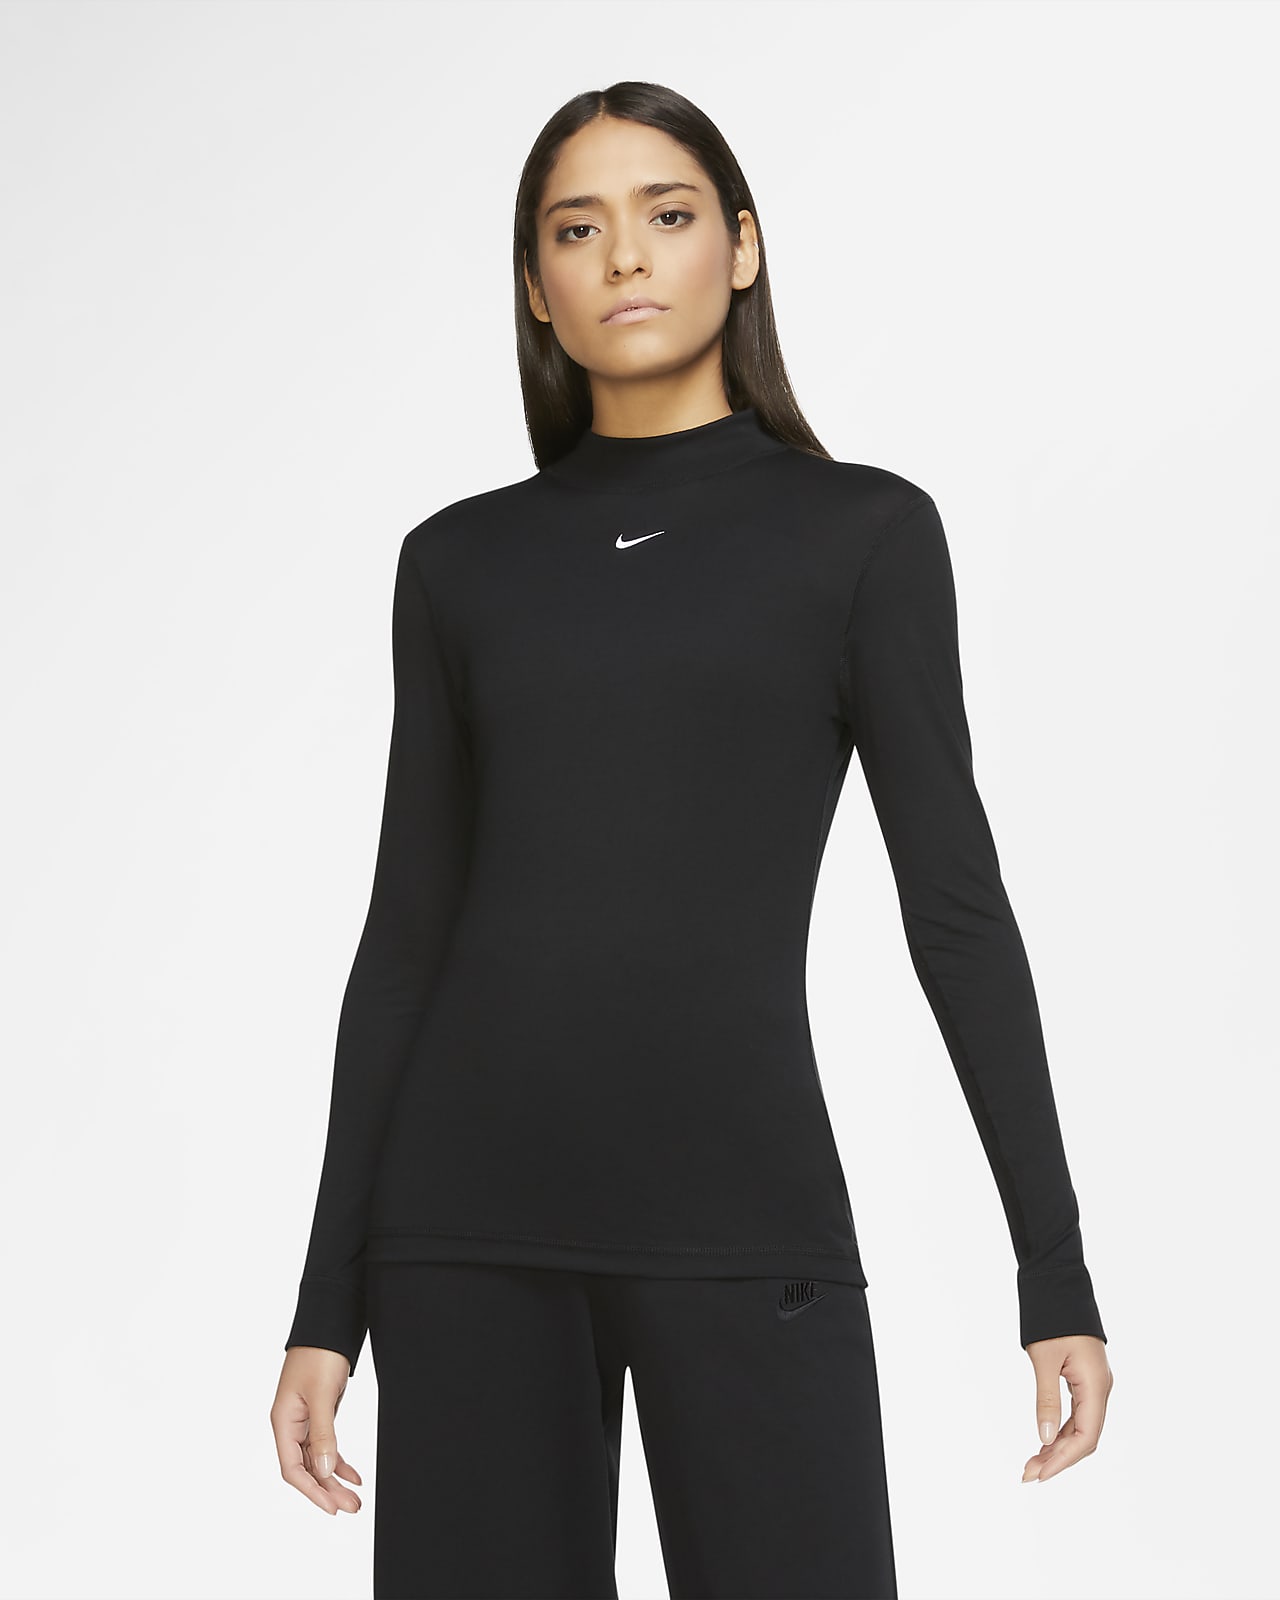 Download Nike Sportswear Women's Long-Sleeve Mock-Neck Top. Nike GB